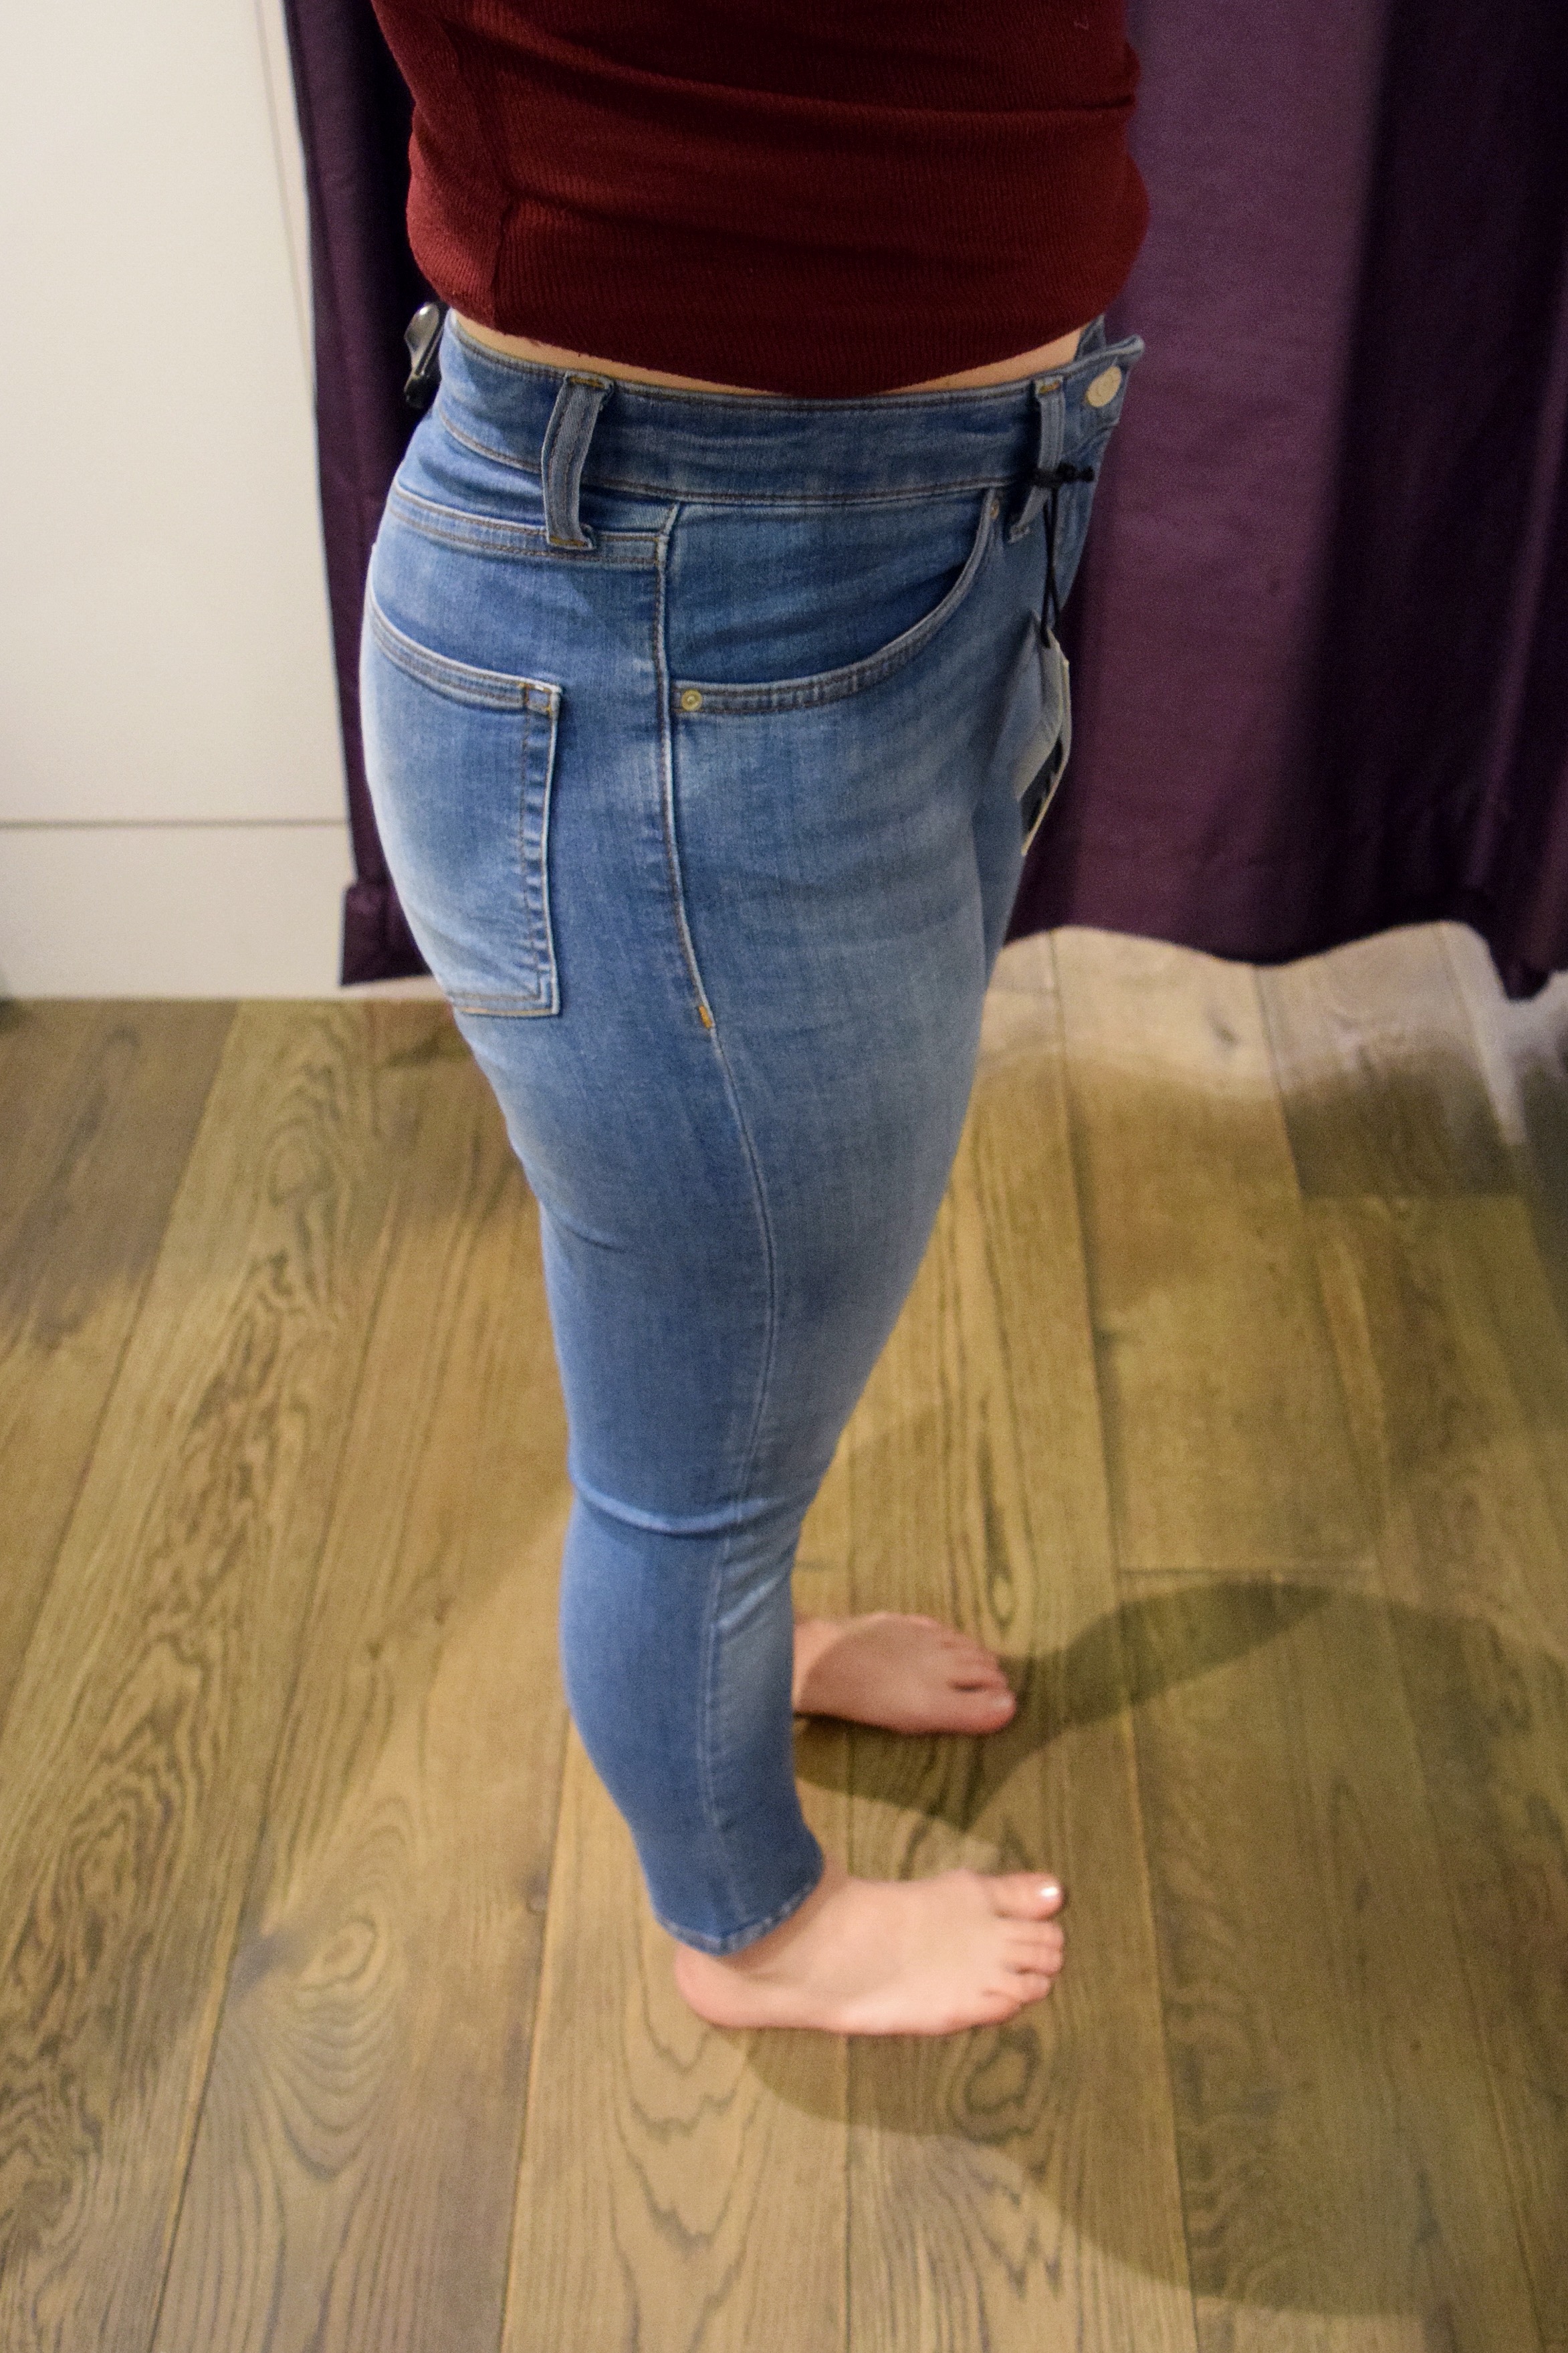 topshop jamie jeans fit